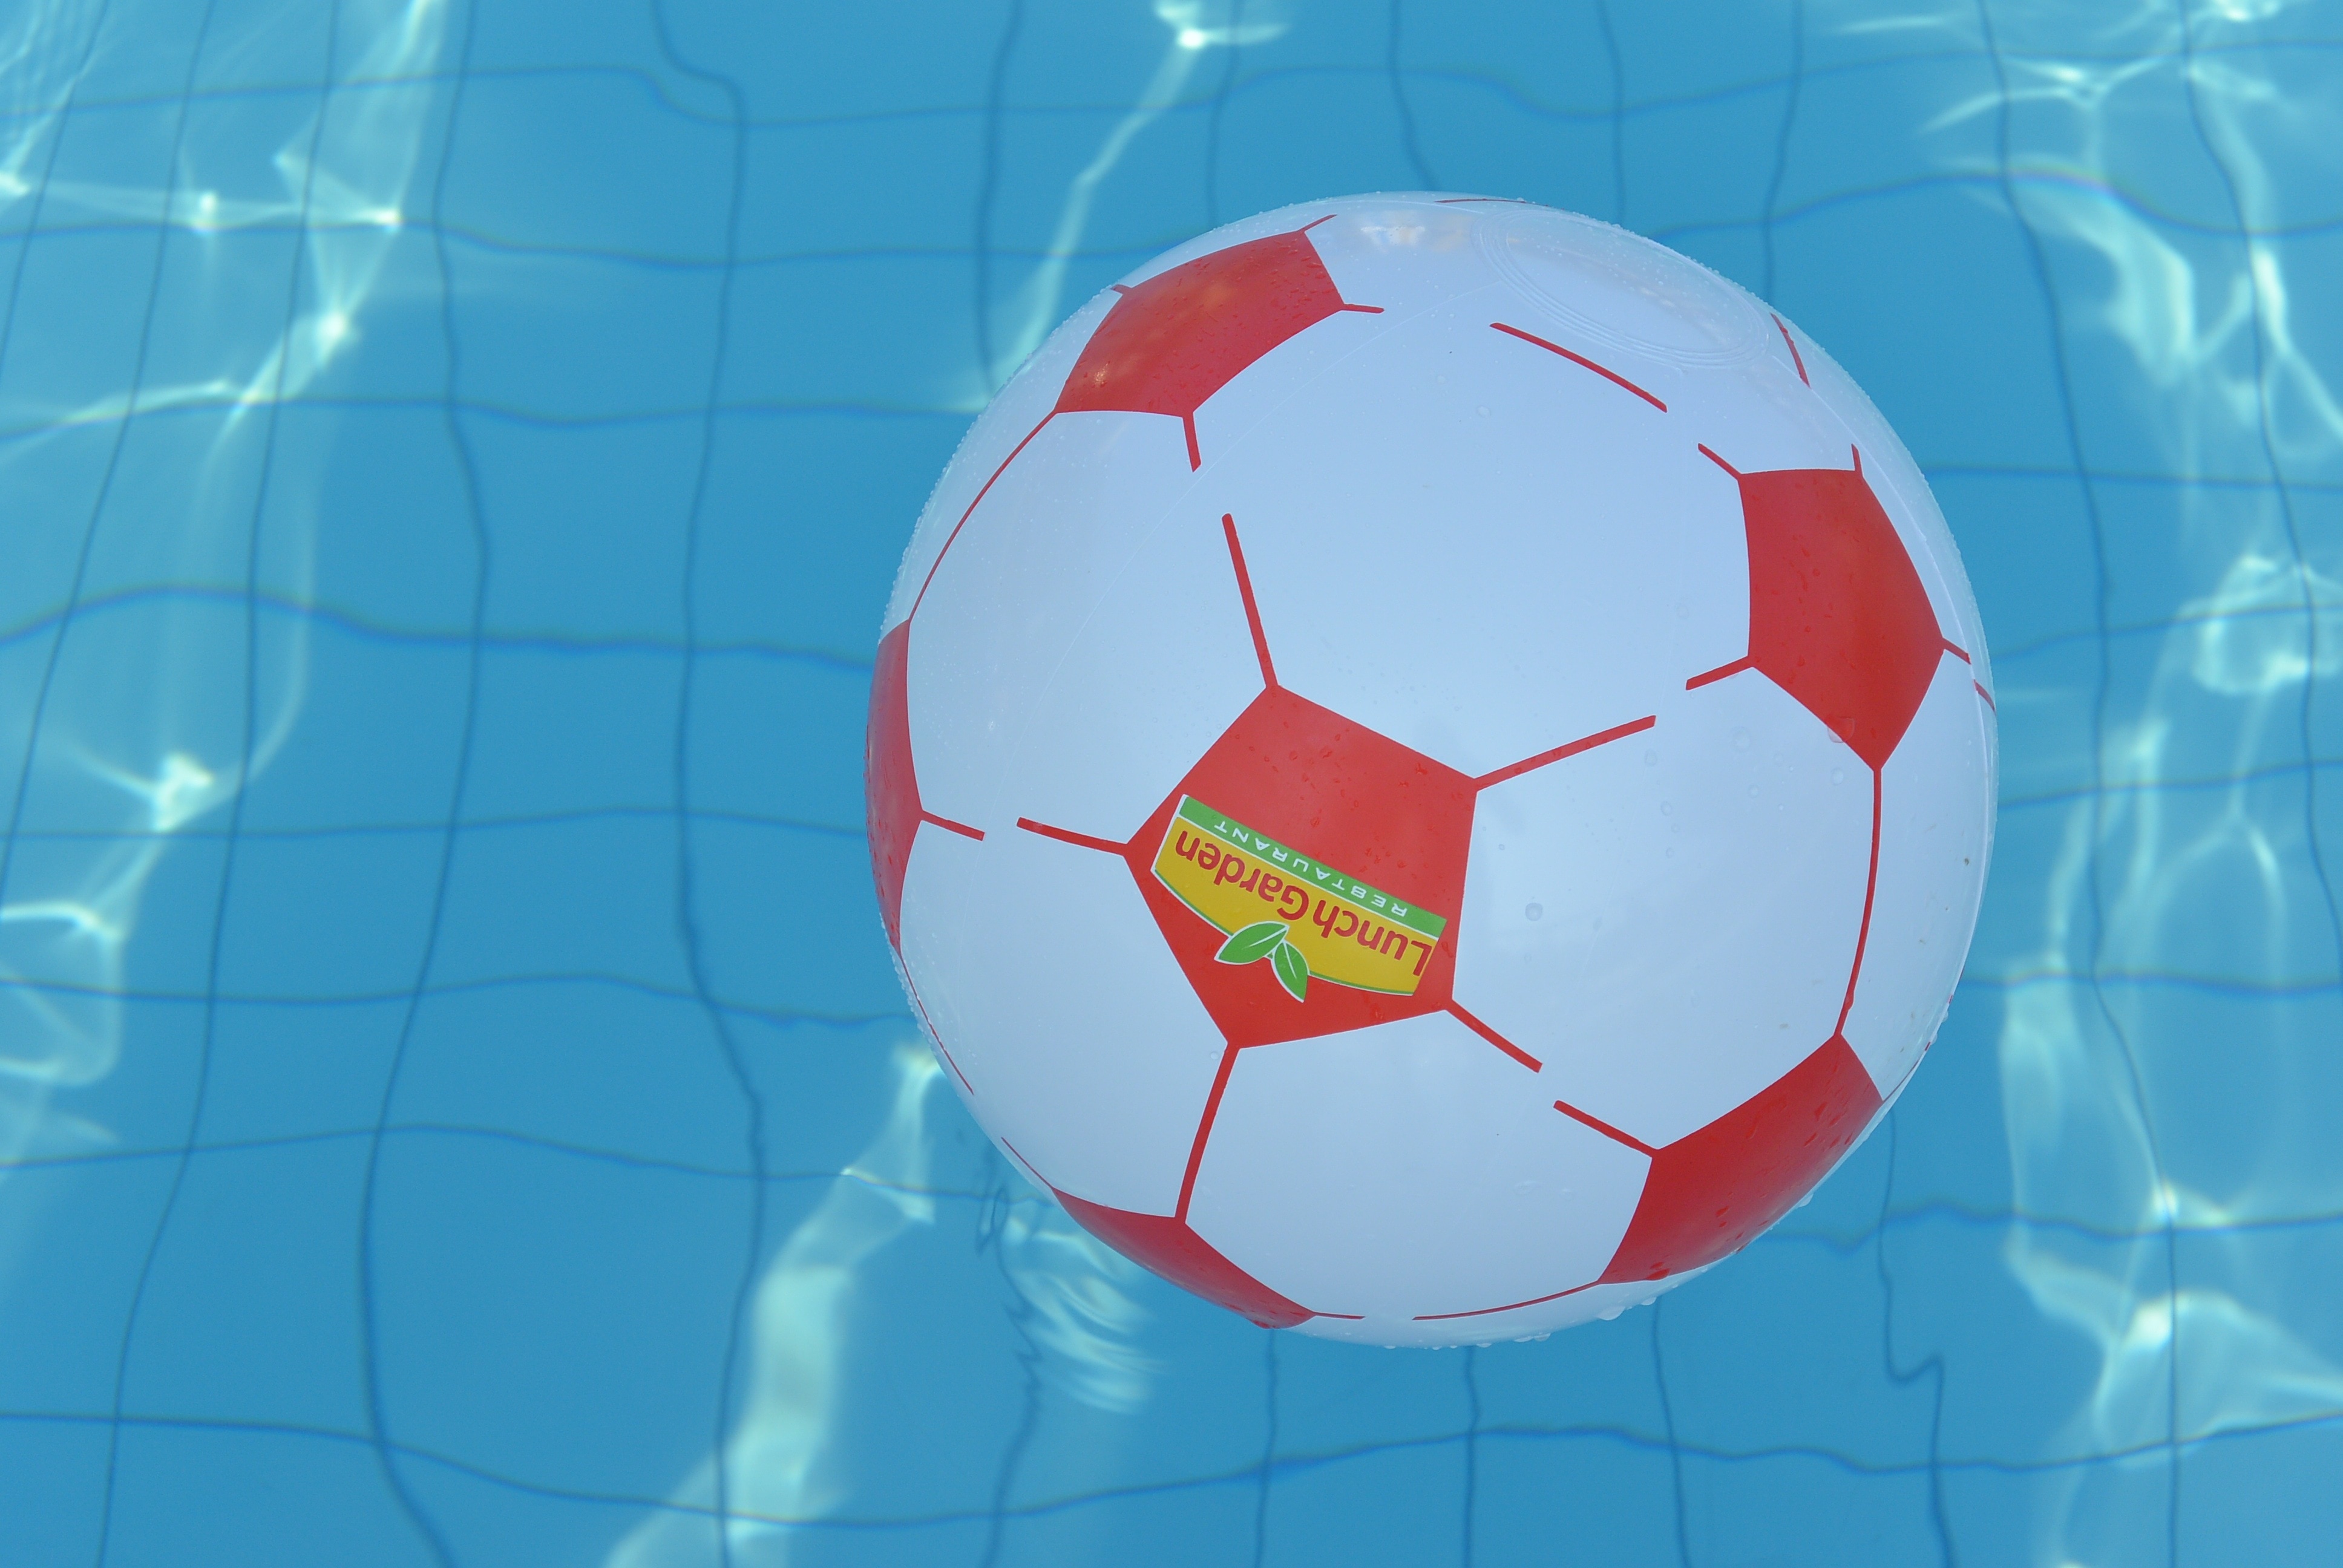 ลูกบอล เล่น ใน น้ำ - HD Wallpaper 